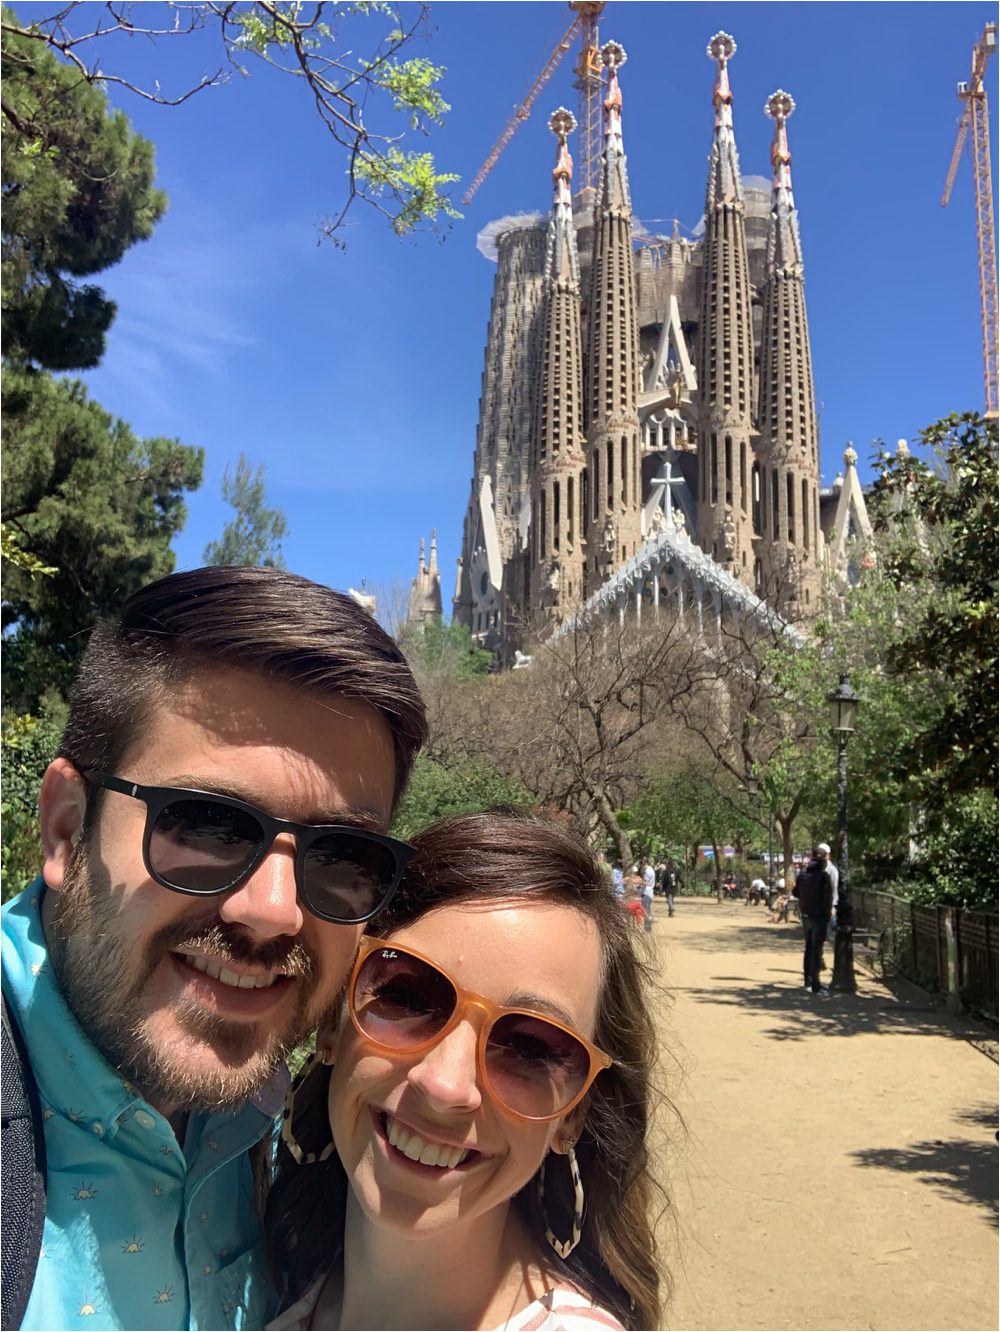 barcelona travel tips